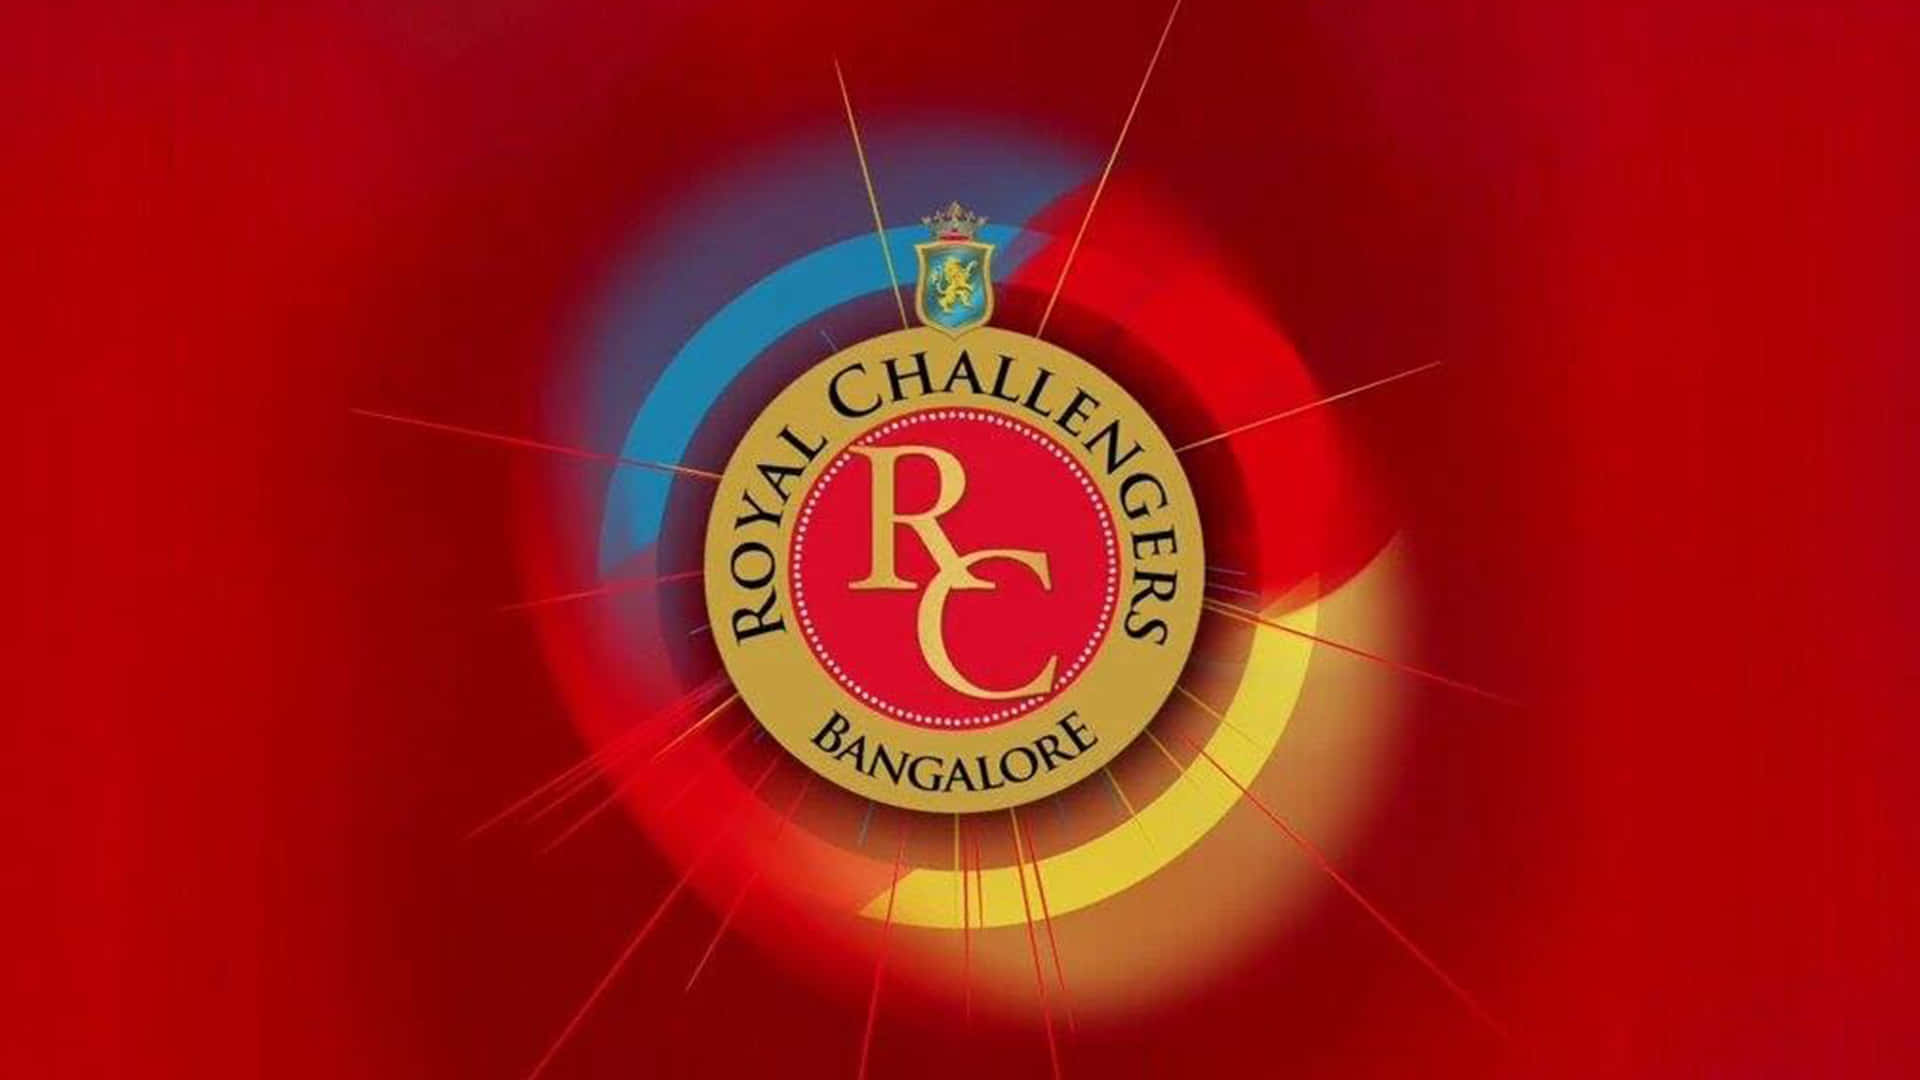 Royalchallengers Bangalore: Mestre Af Muligheder